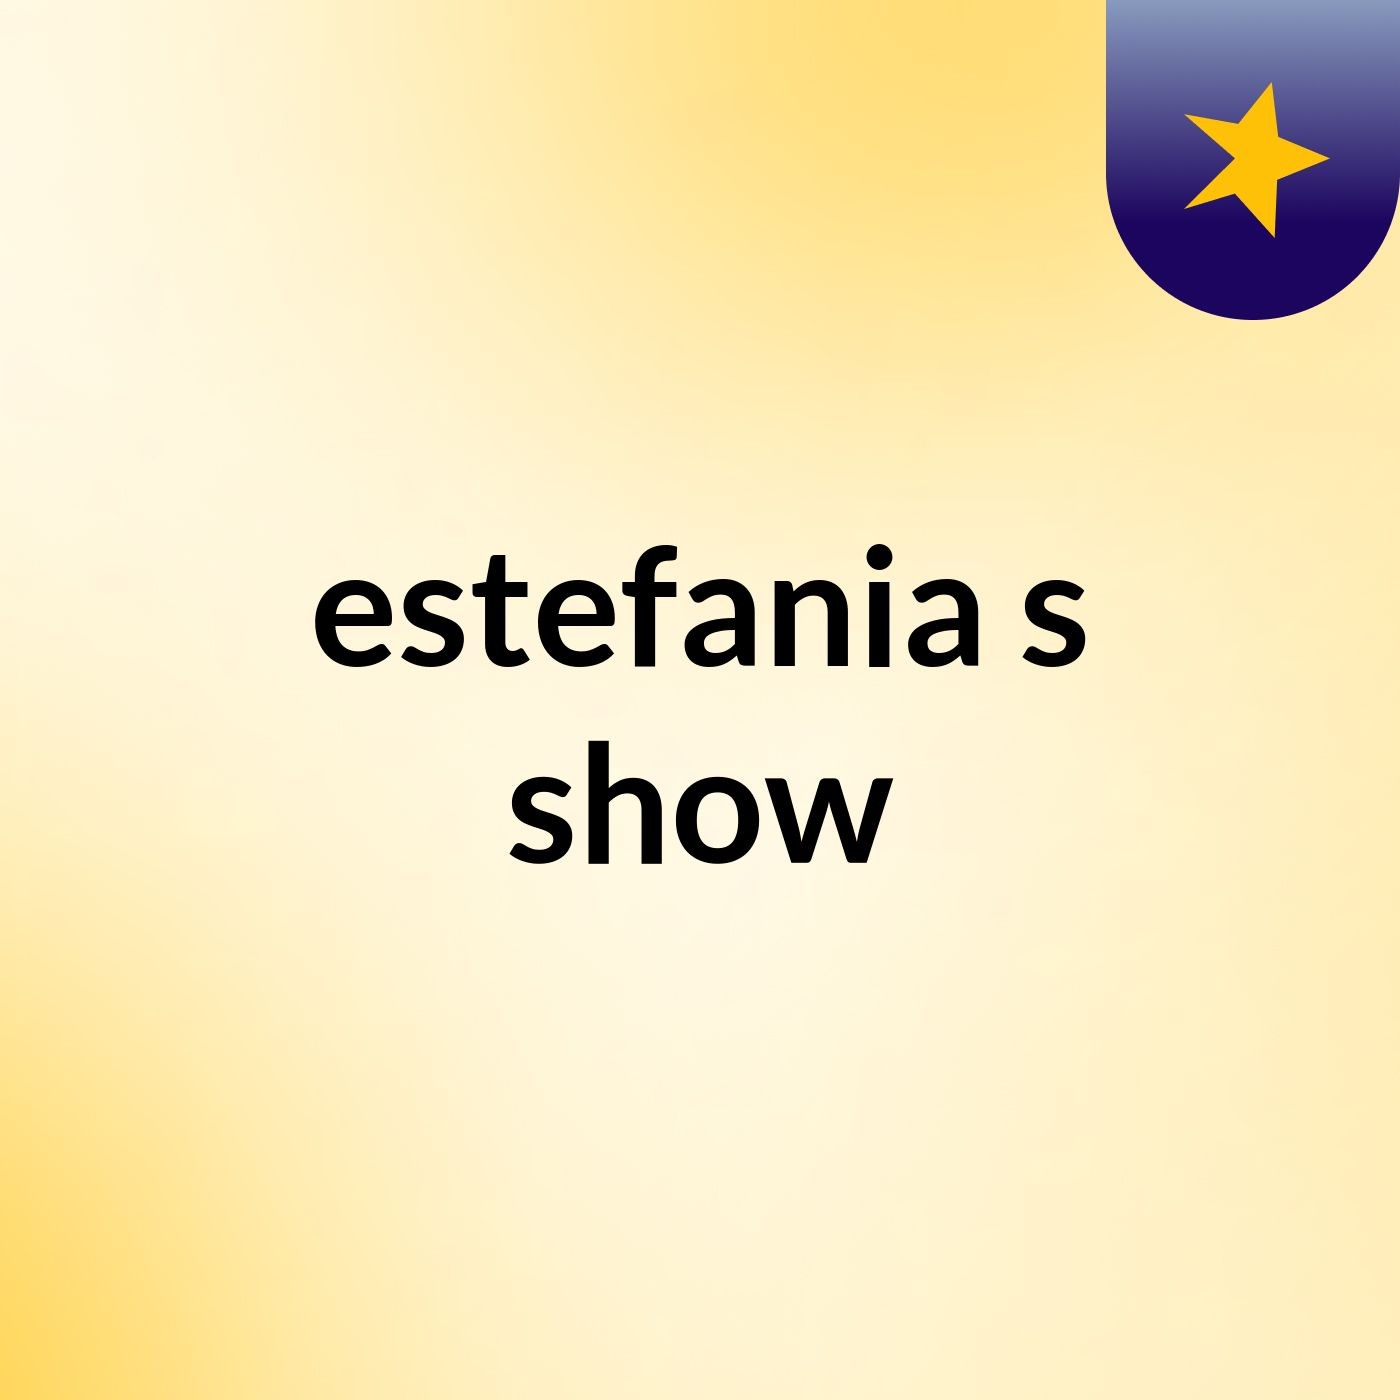 estefania's show